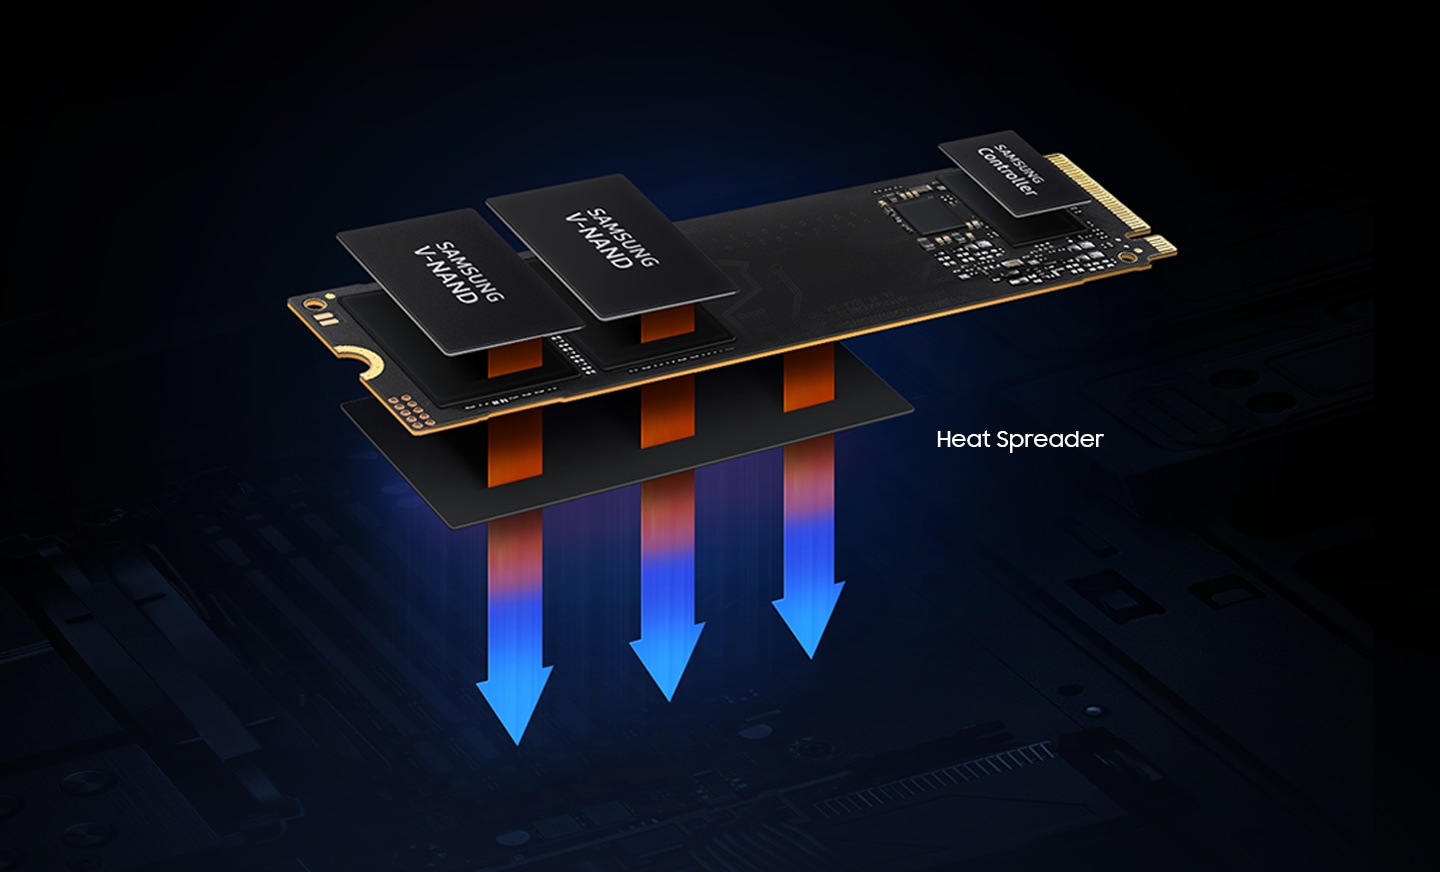 Wärme wird durch den V-NAND und den Controller erzeugt, die die Hauptelemente der SSD sind. Das Wärmespreizer-Etikett kontrolliert die Wärme und erhält die Leistung der SSD.